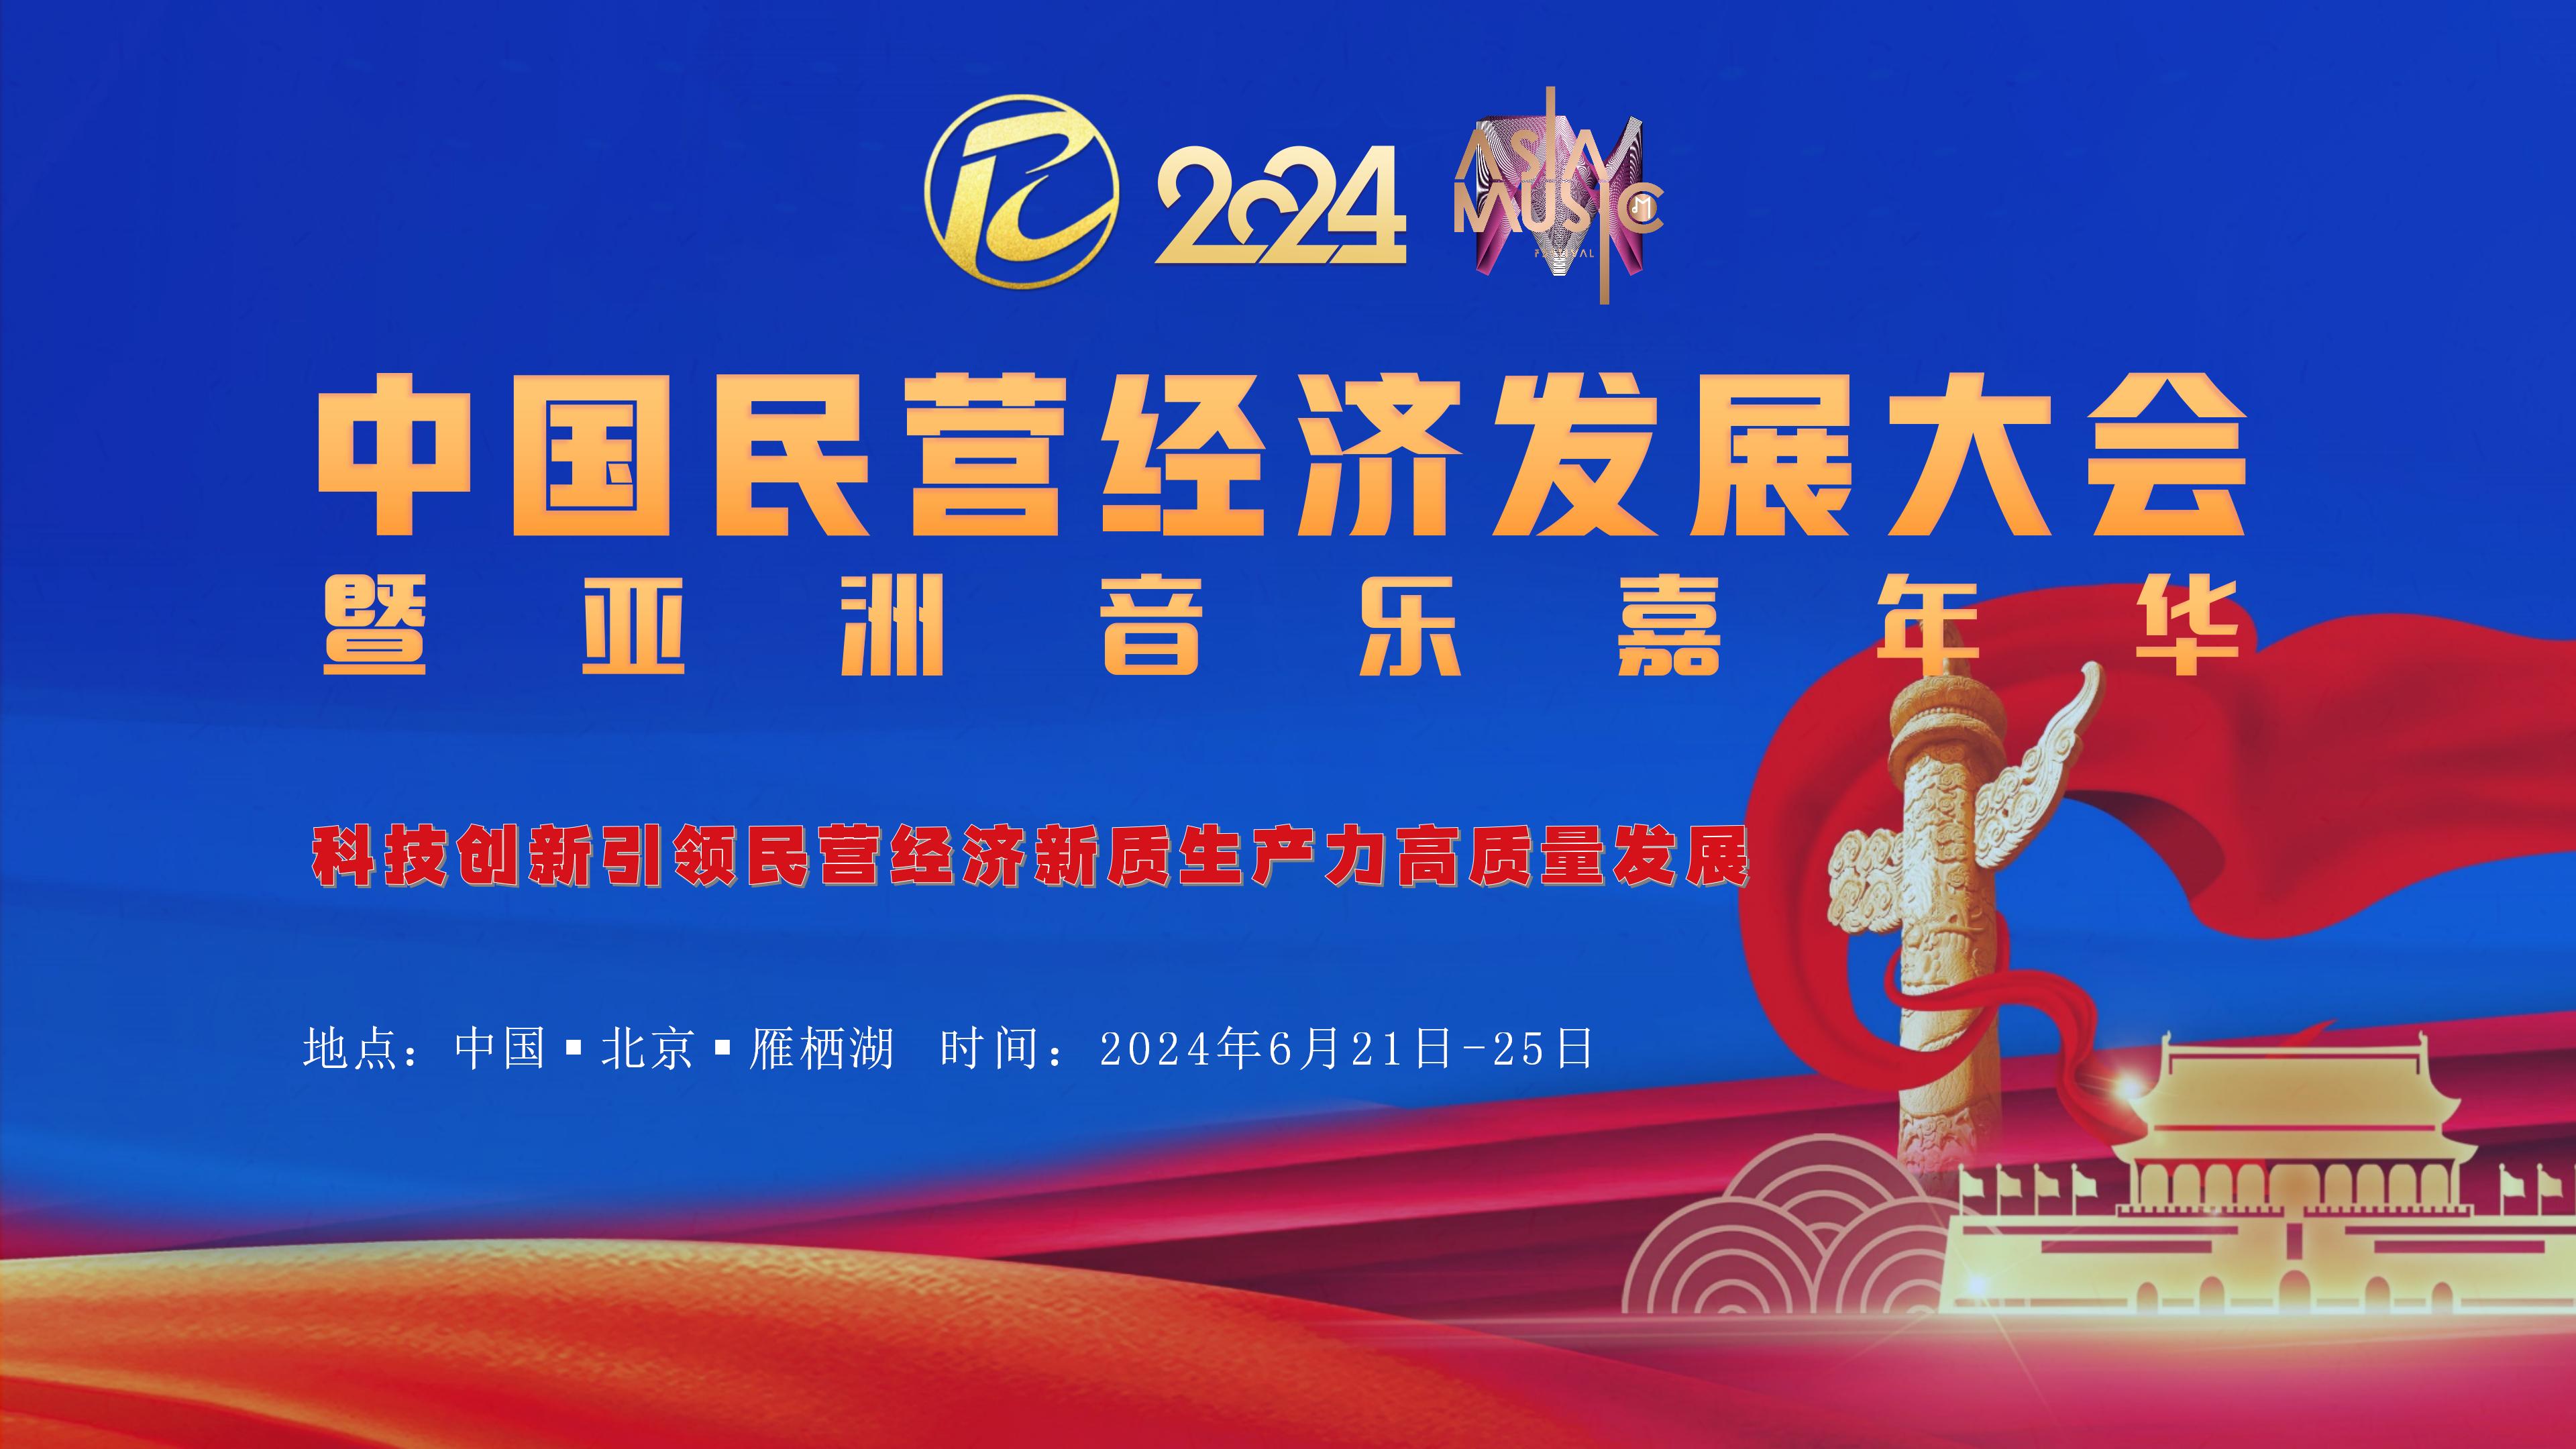 2024中国民营经济发展大会暨亚洲音乐嘉年华将在京举行